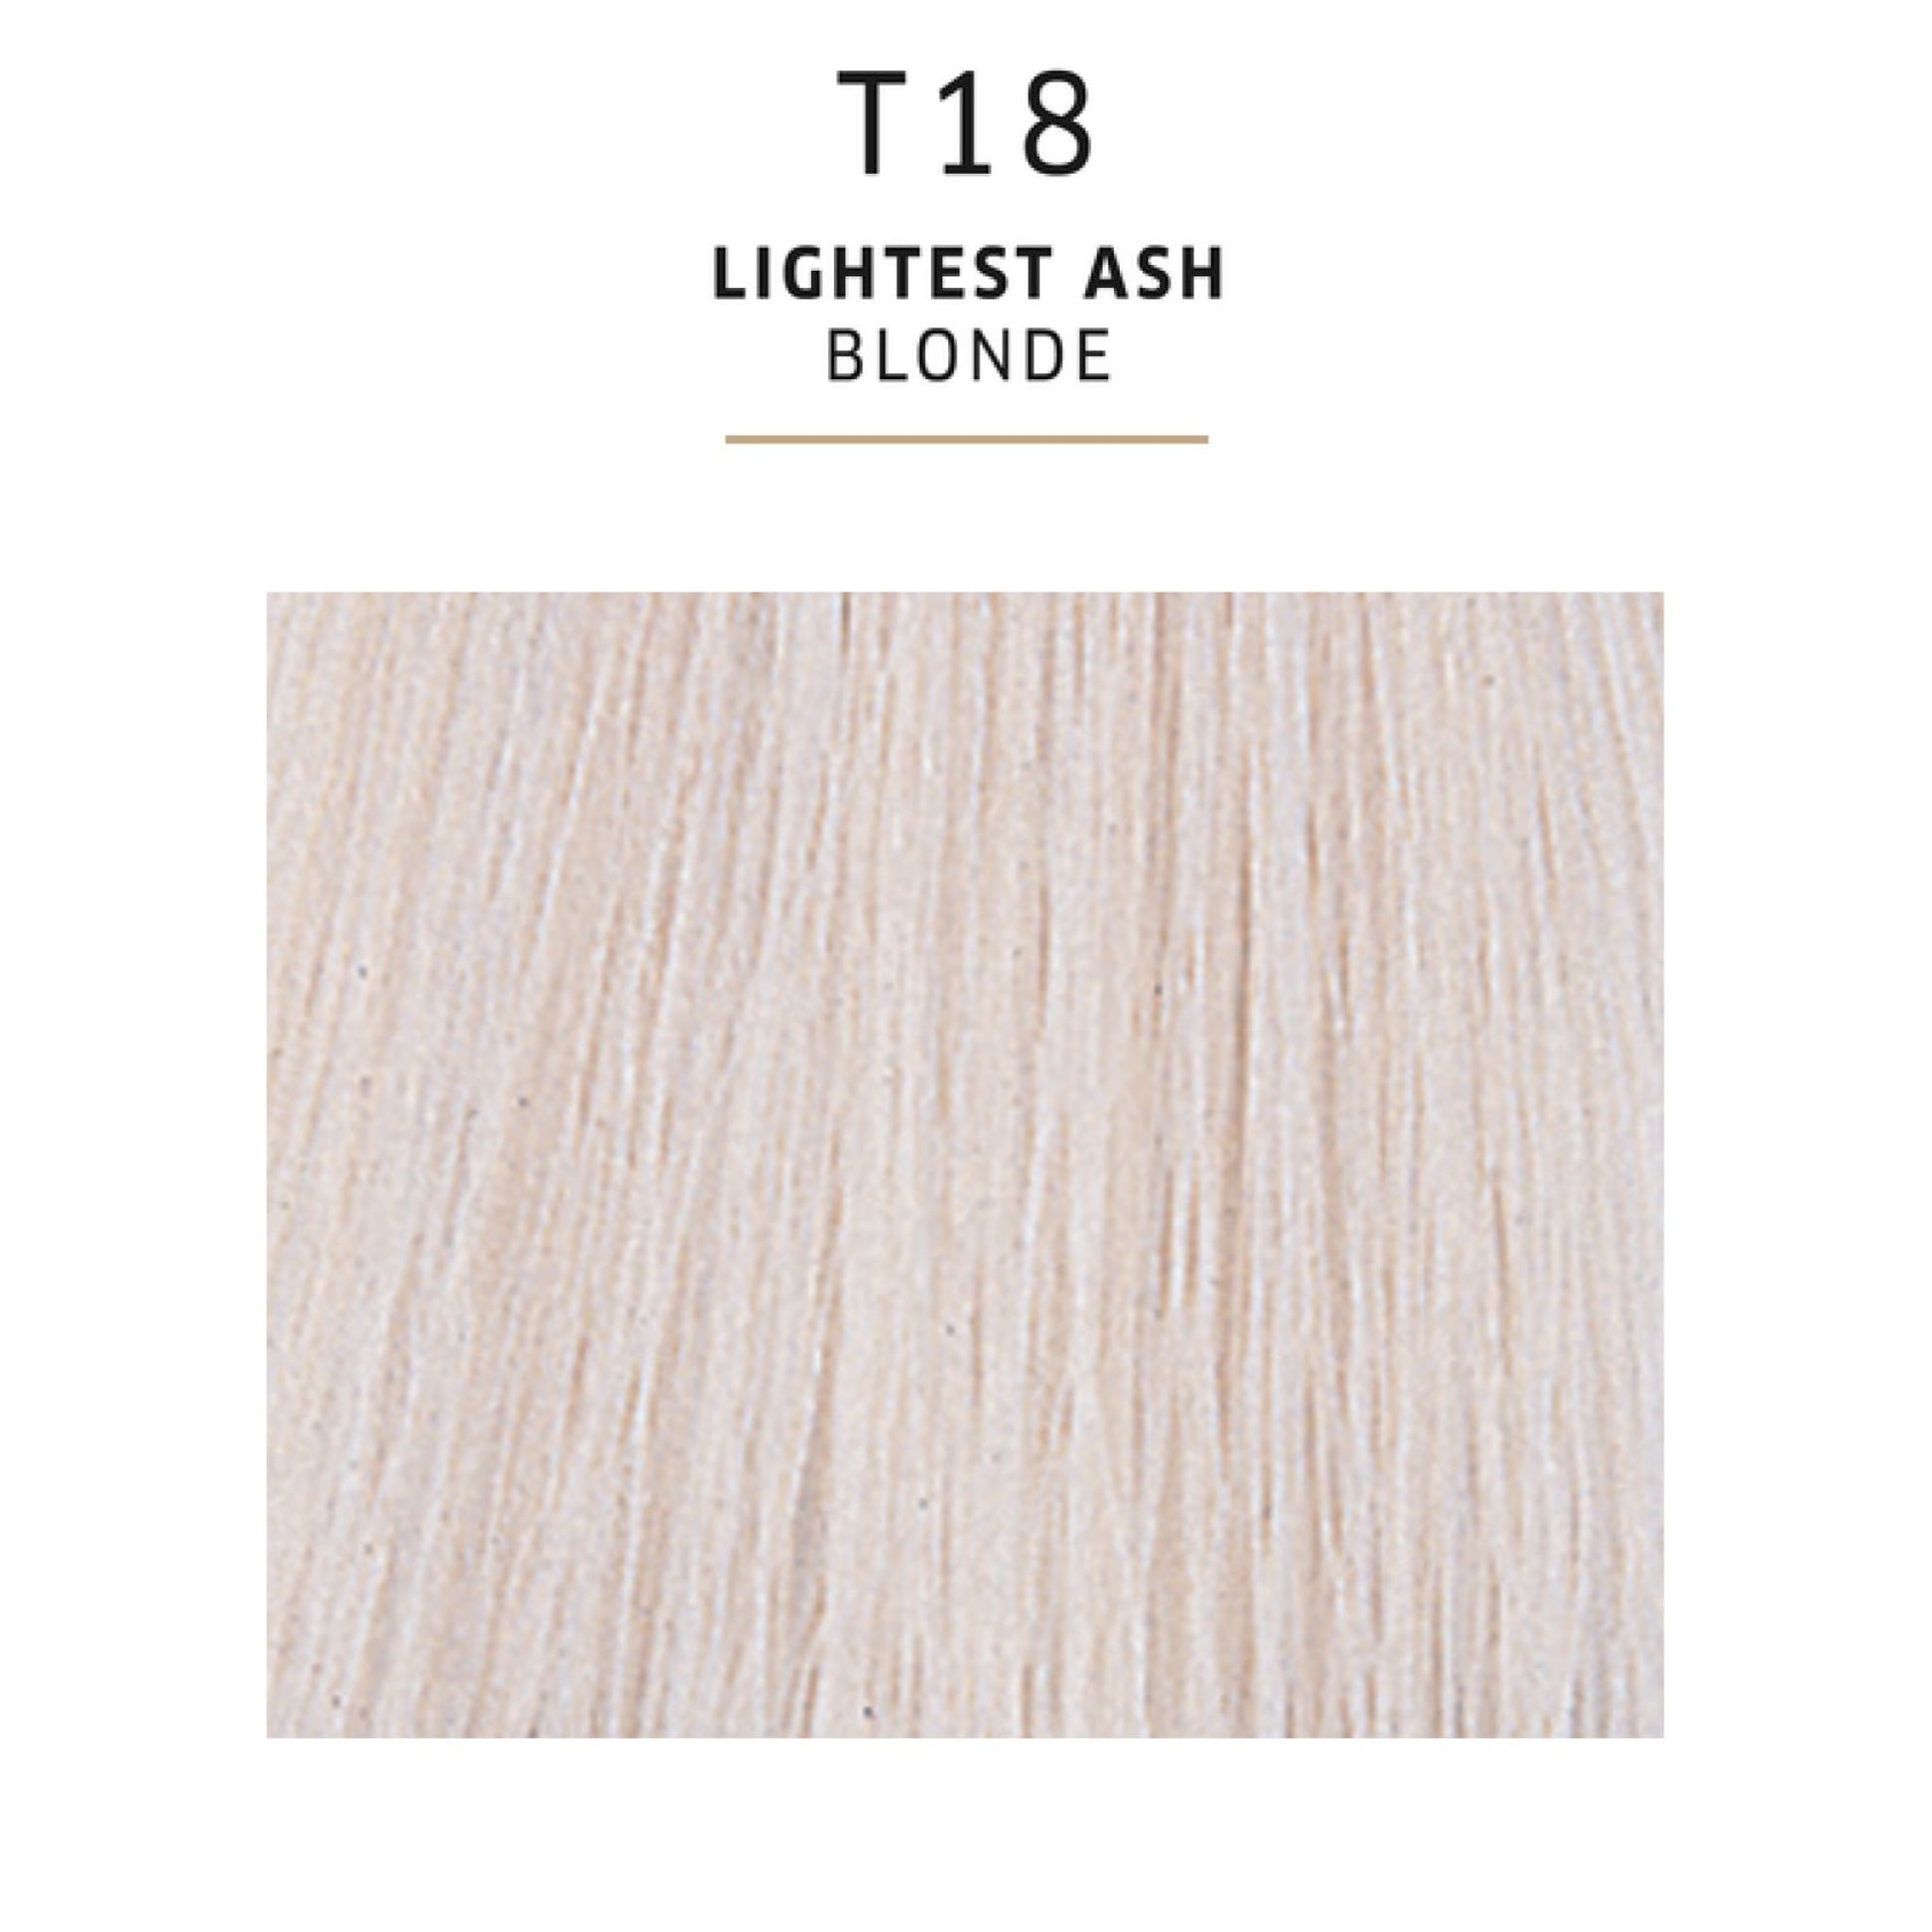 Wella Colour Charm T18 Lightest Ash Blonde Toner